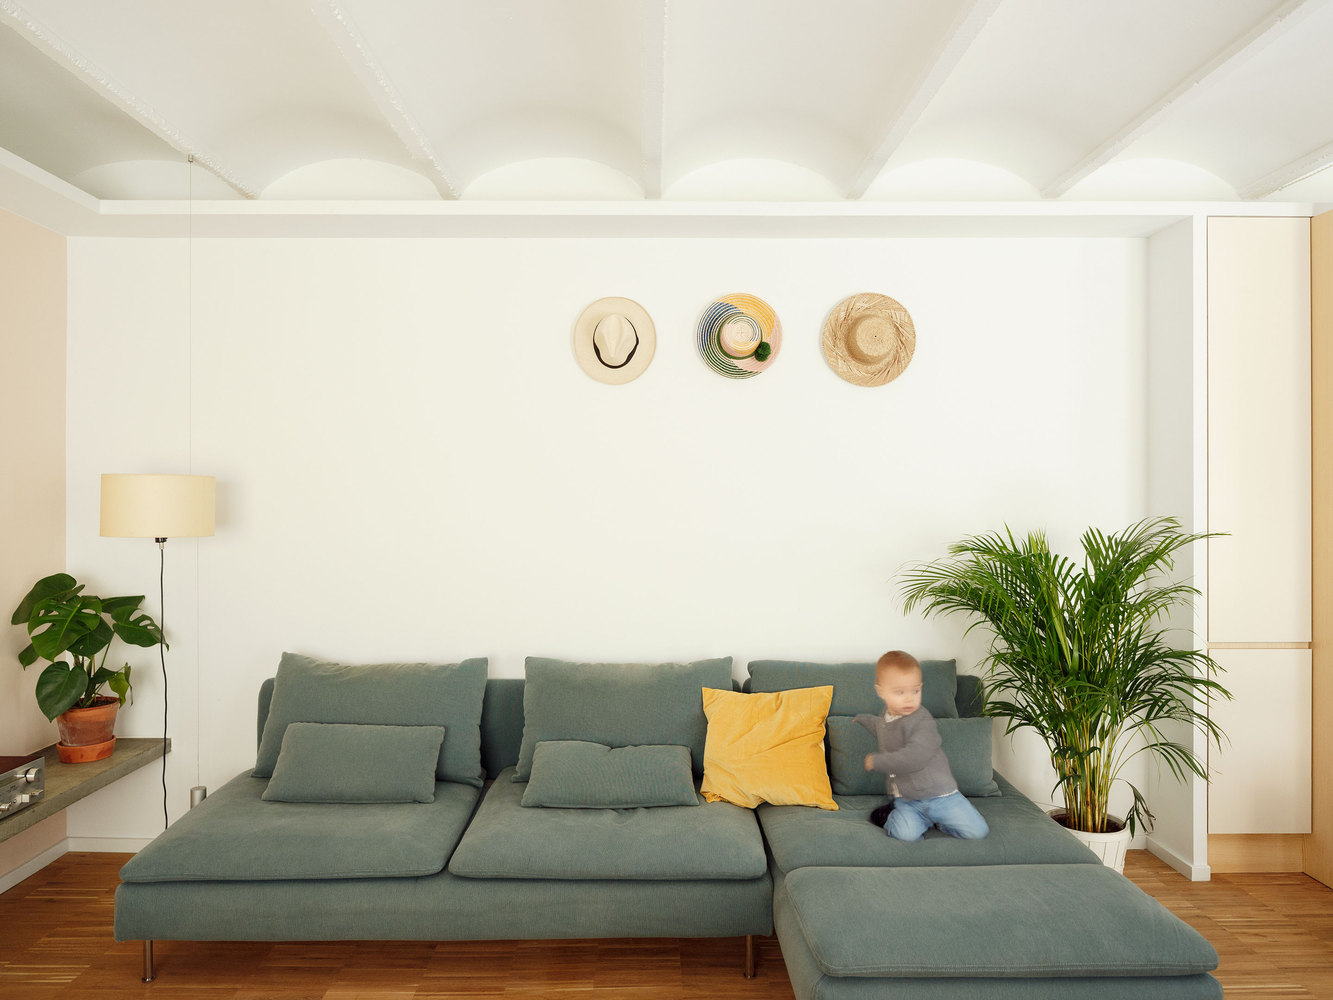 Phòng khách được bố trí chiếc ghế sofa chữ L màu xám không tay vịn - xu hướng thiết kế nội thất được ưa chuộng vì tạo cảm giác rộng rãi cho không gian. Những chiếc mũ nhiều kiểu dáng cũng giúp cho cho bức tường phòng khách sinh động hơn.